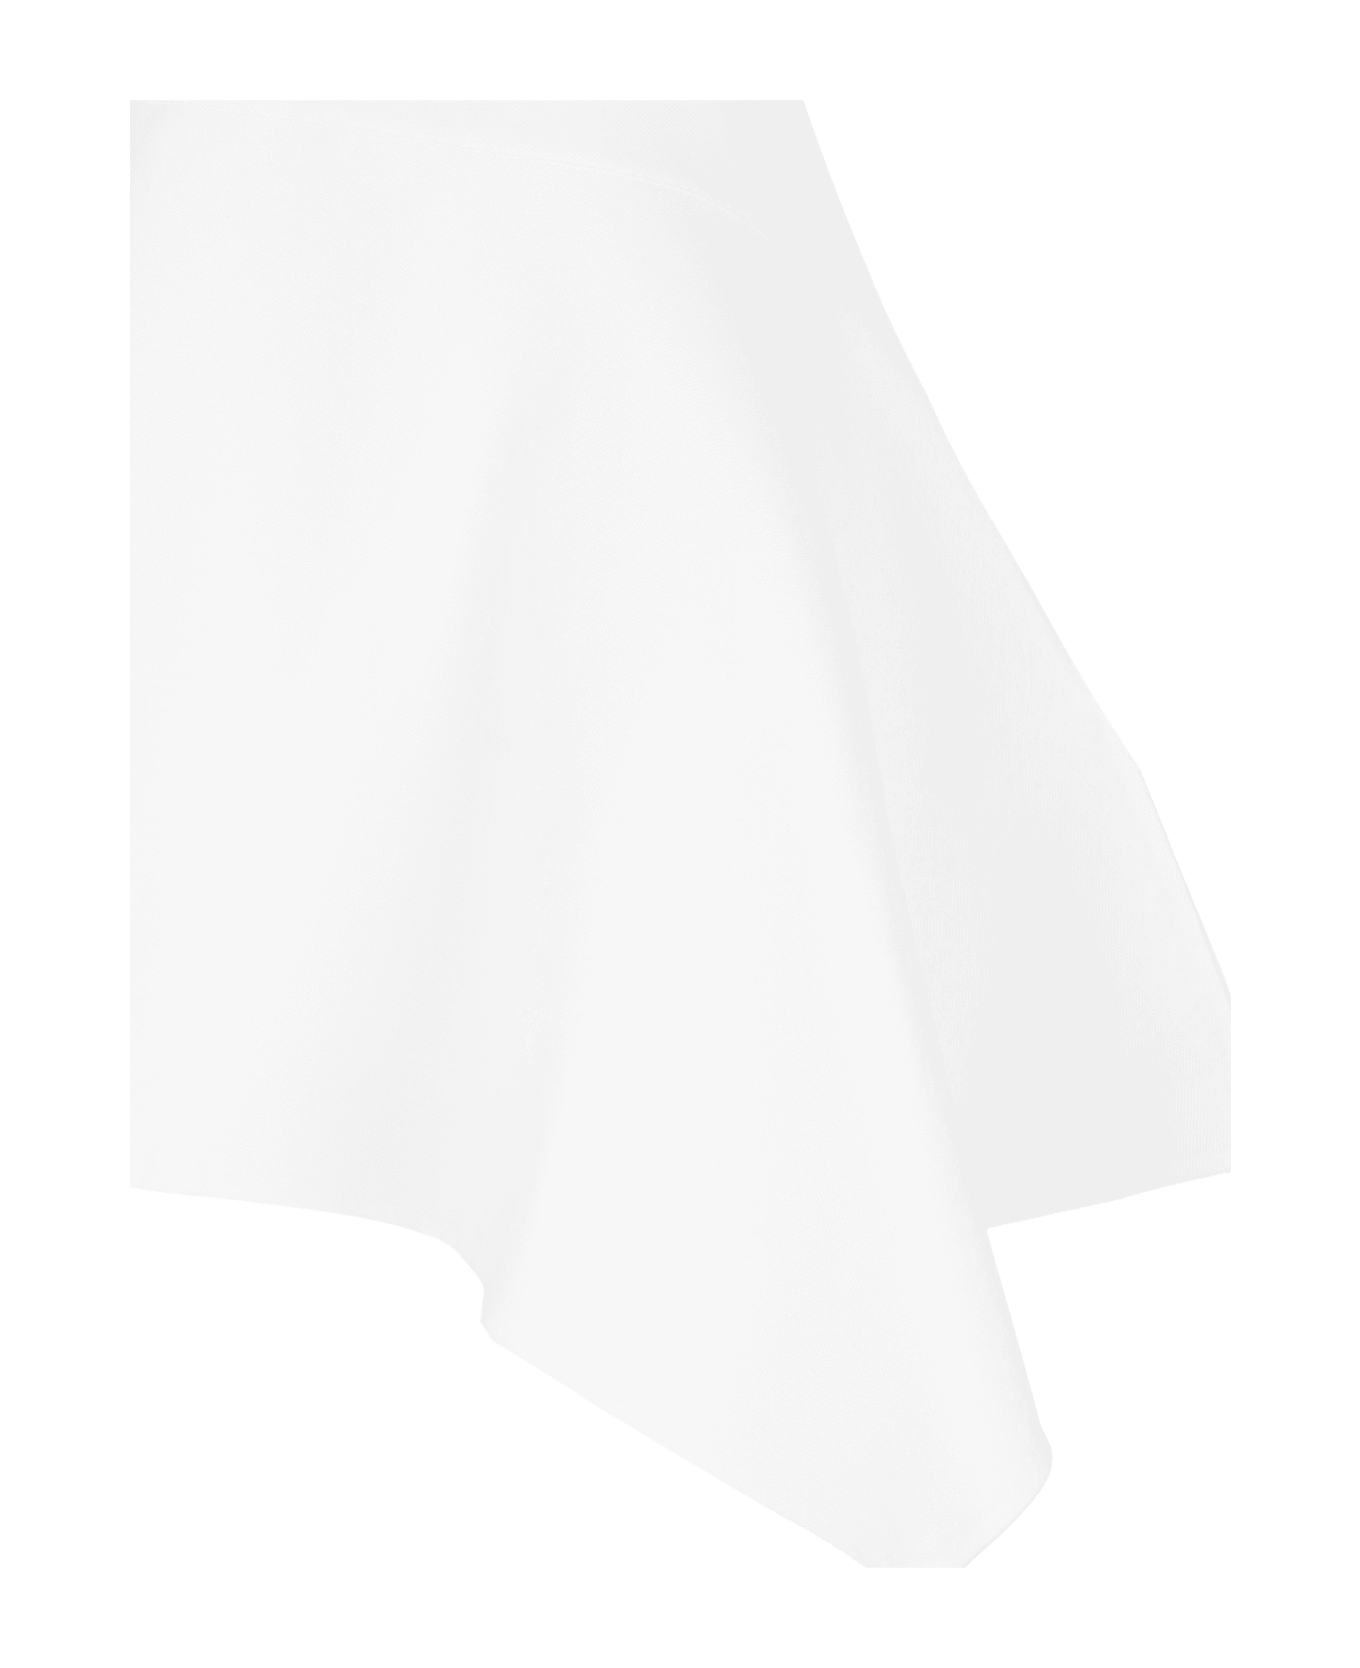 J.W. Anderson Asymmetrical Polo Dress - White